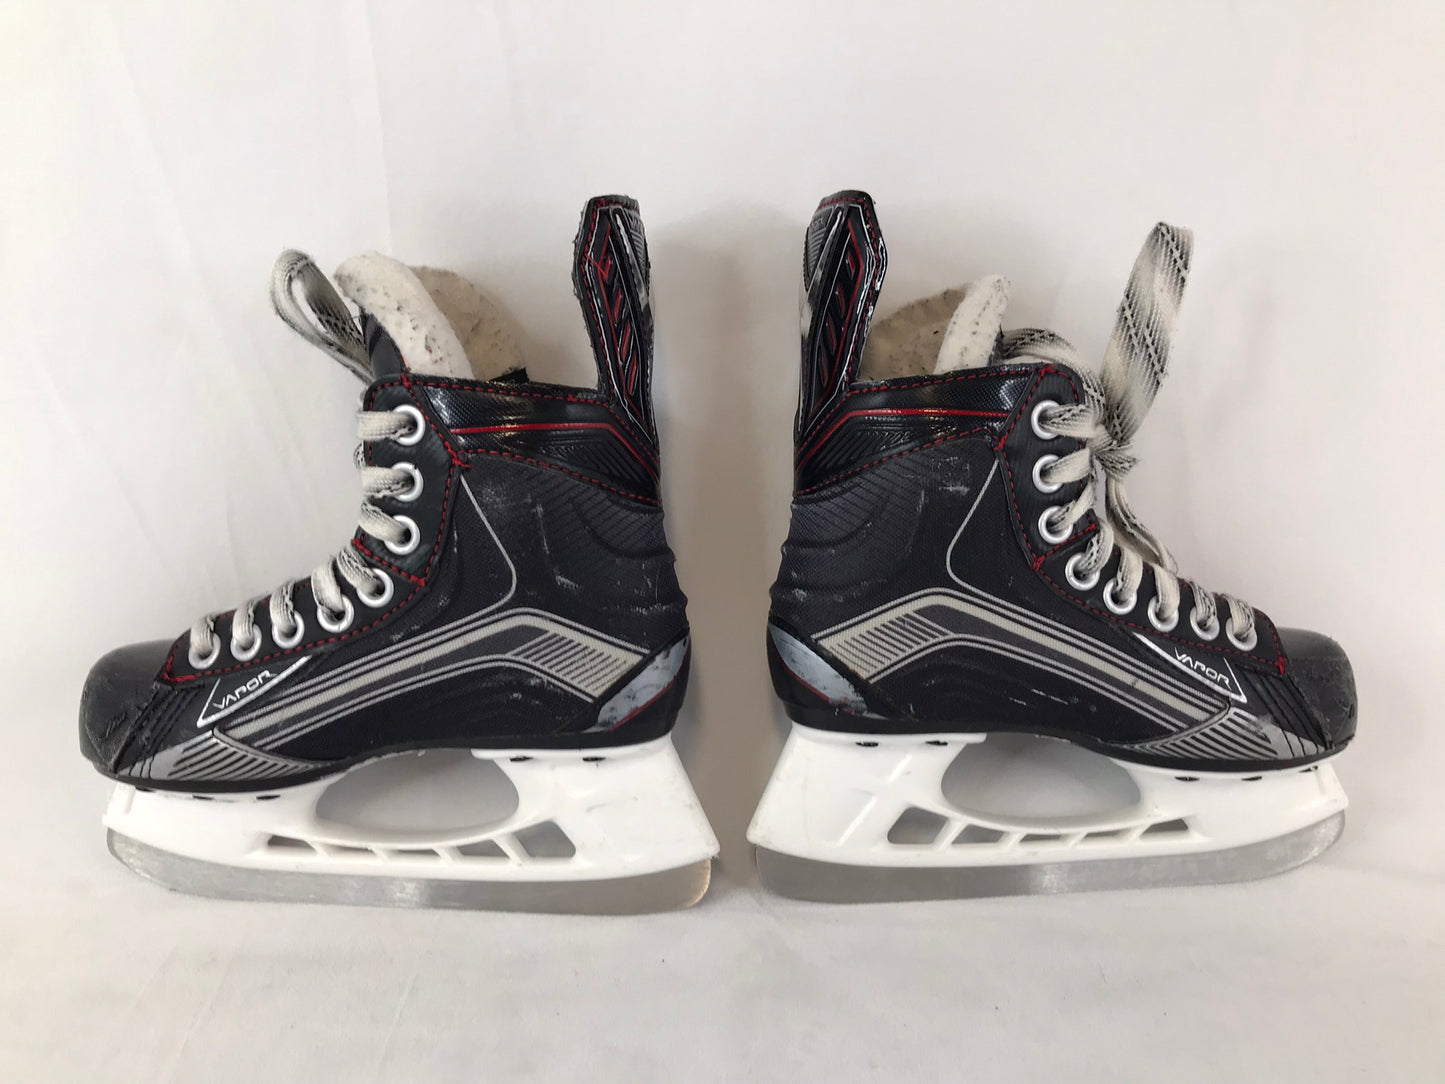 Hockey Skates Child Size 12 Shoe Size Bauer Vapor X500 Excellent